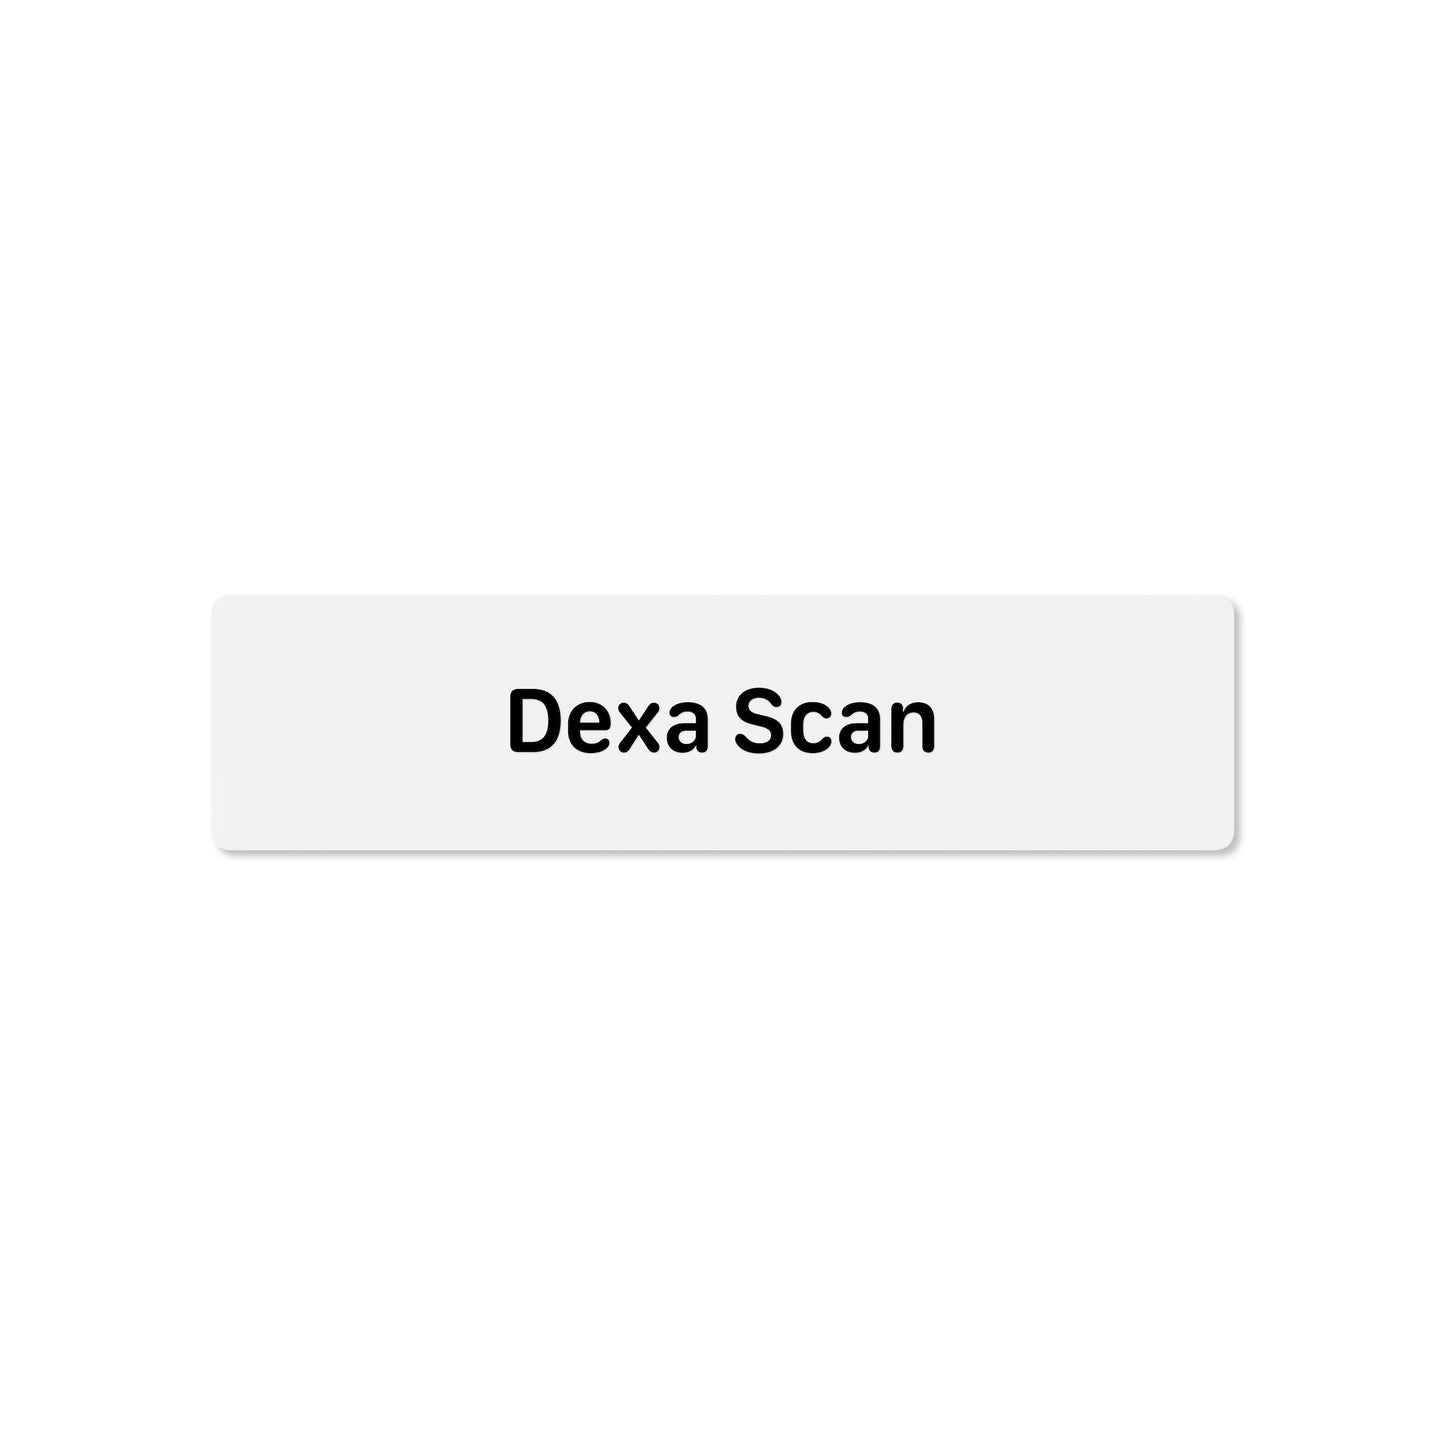 Dexa Scan